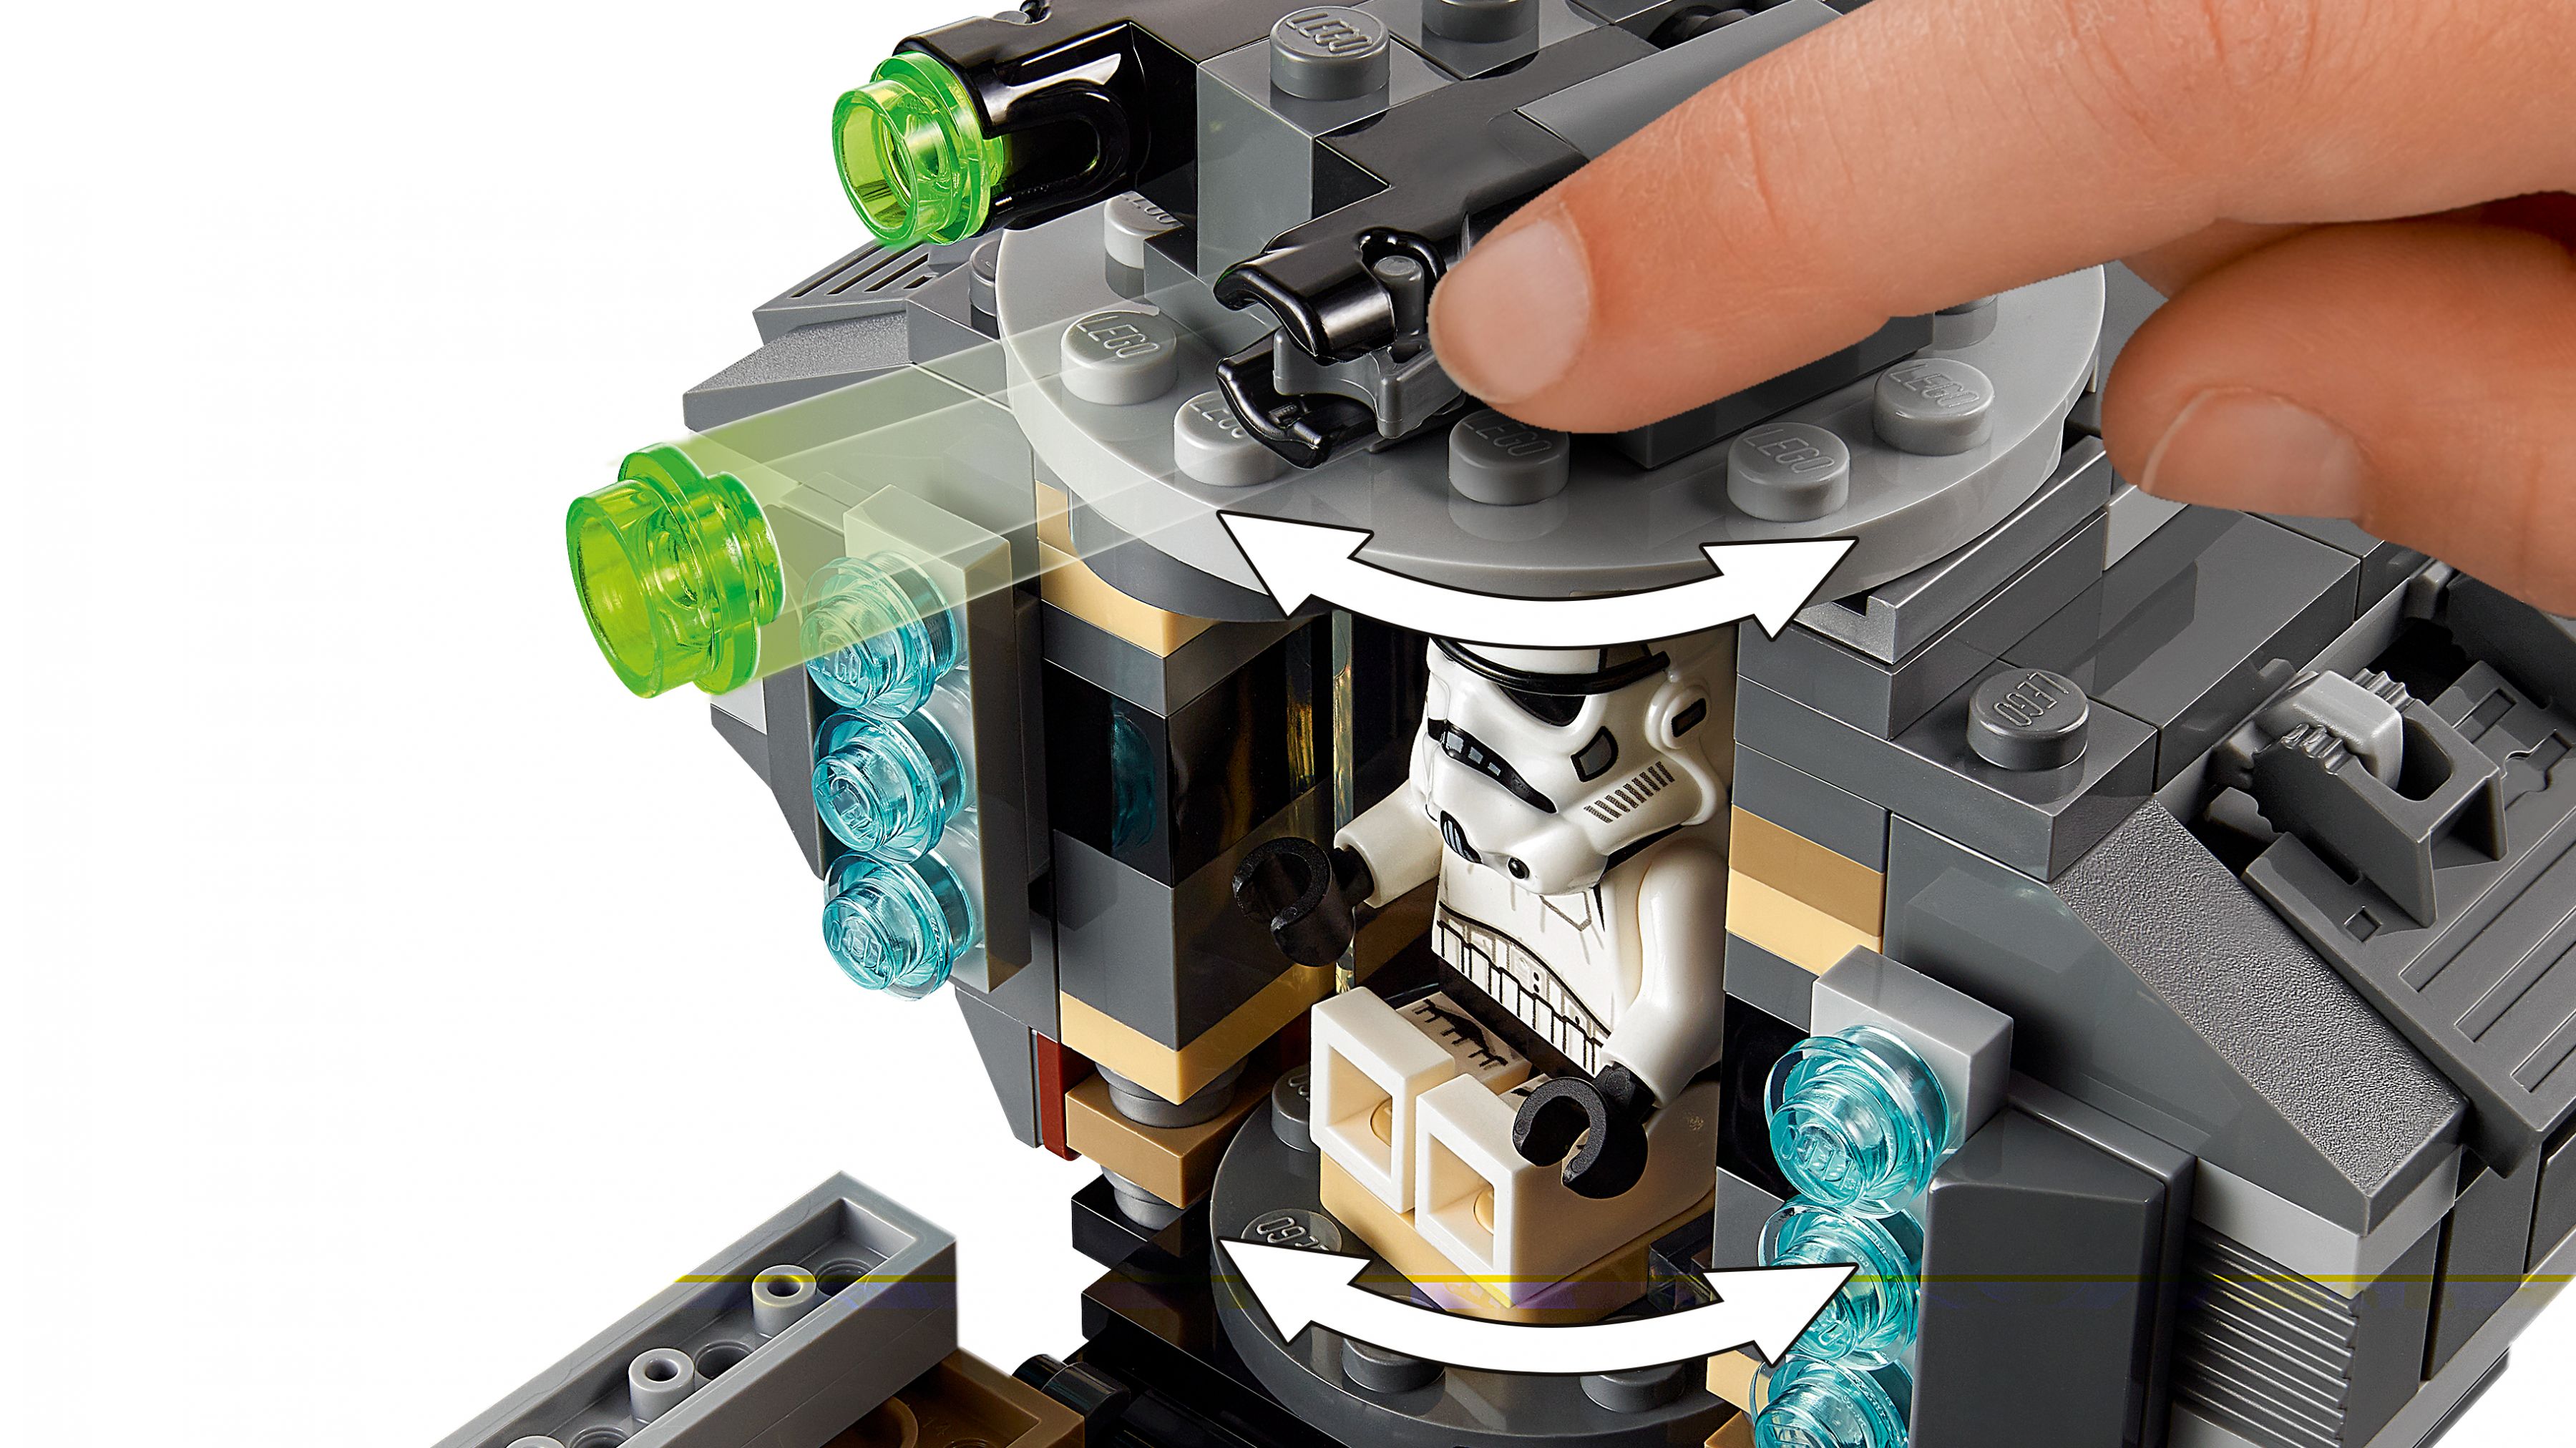 LEGO Star Wars 75311 Imperialer Marauder LEGO_75311_web_sec04_nobg.jpg